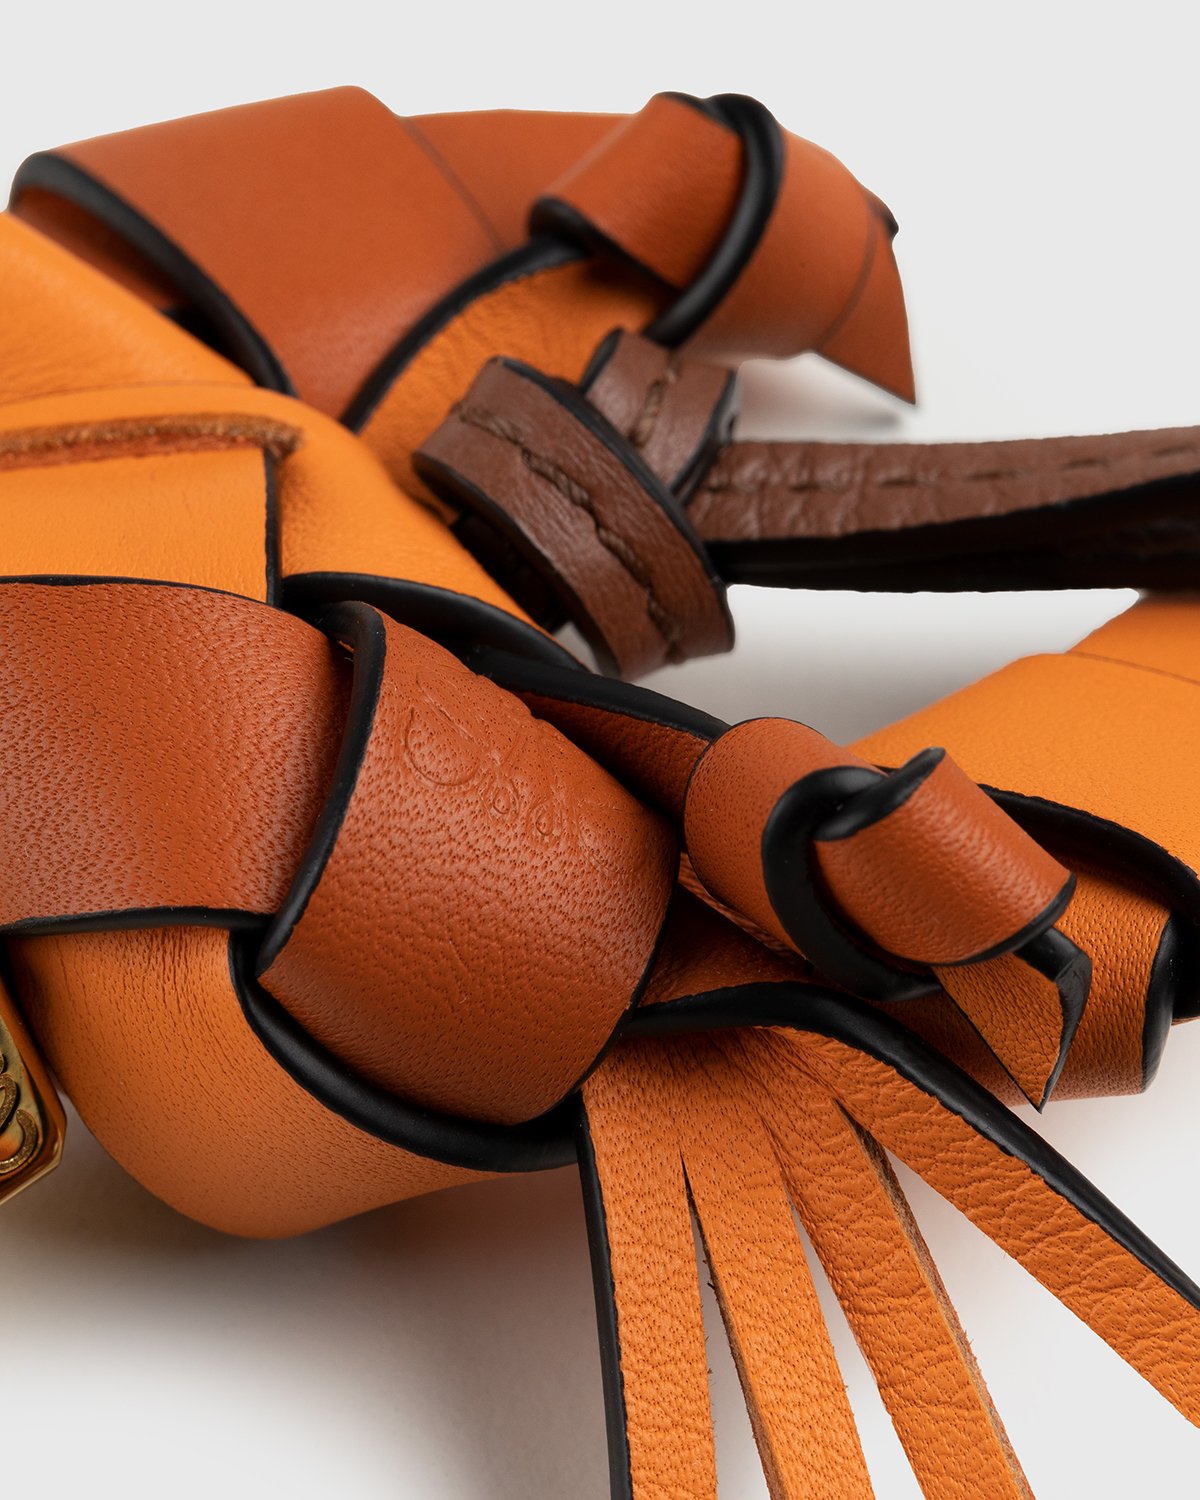 Loewe - Paula's Ibiza Crab Charm Orange - Accessories - Orange - Image 4